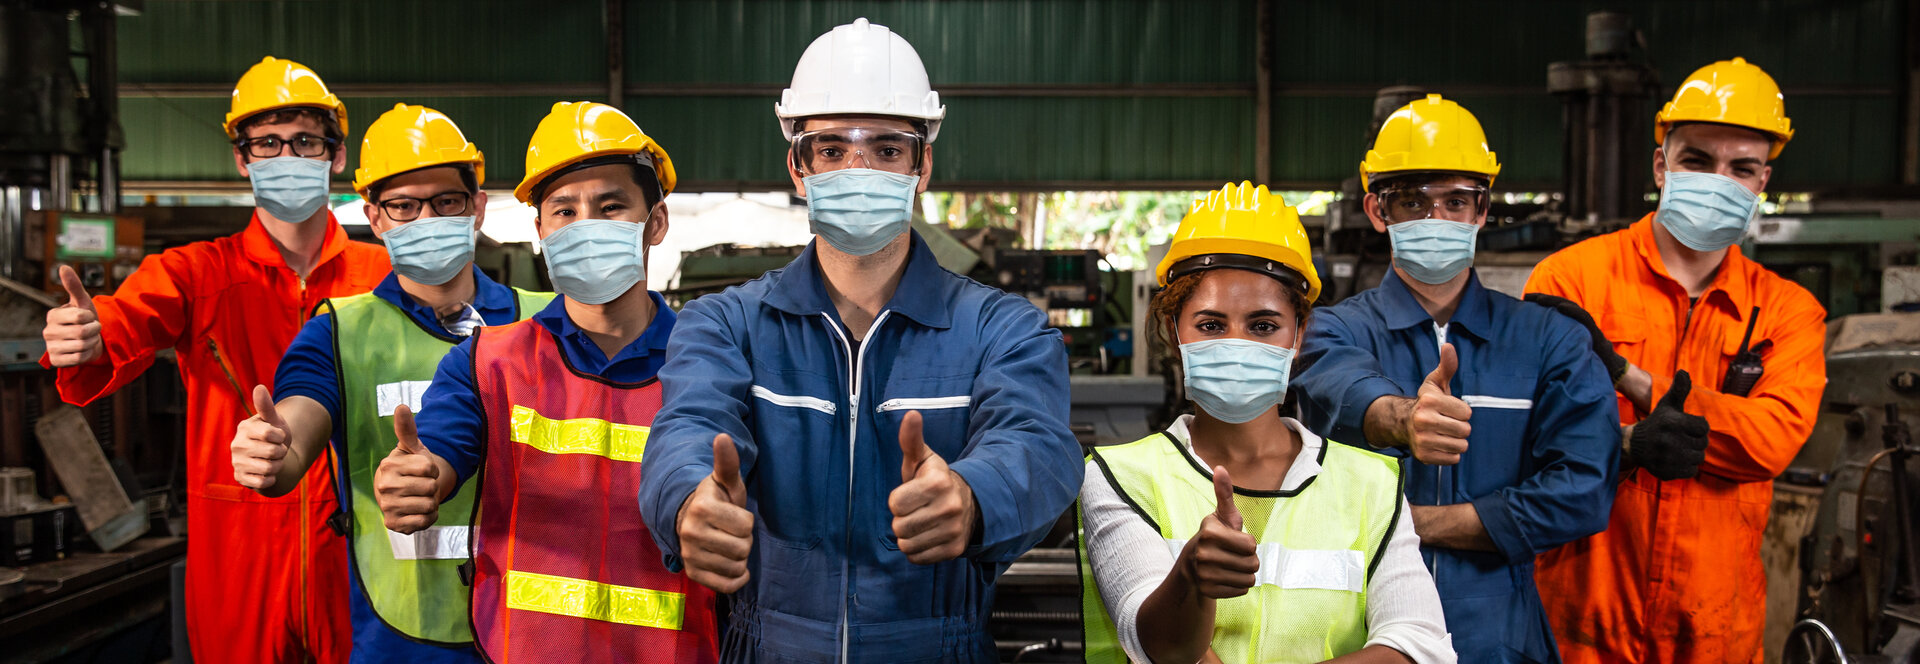 Eine Gruppe von Arbeitern, die Atemschutzmasken gegen Luftstaubverschmutzung tragen, stehen nebeneinander in einer Fabrik